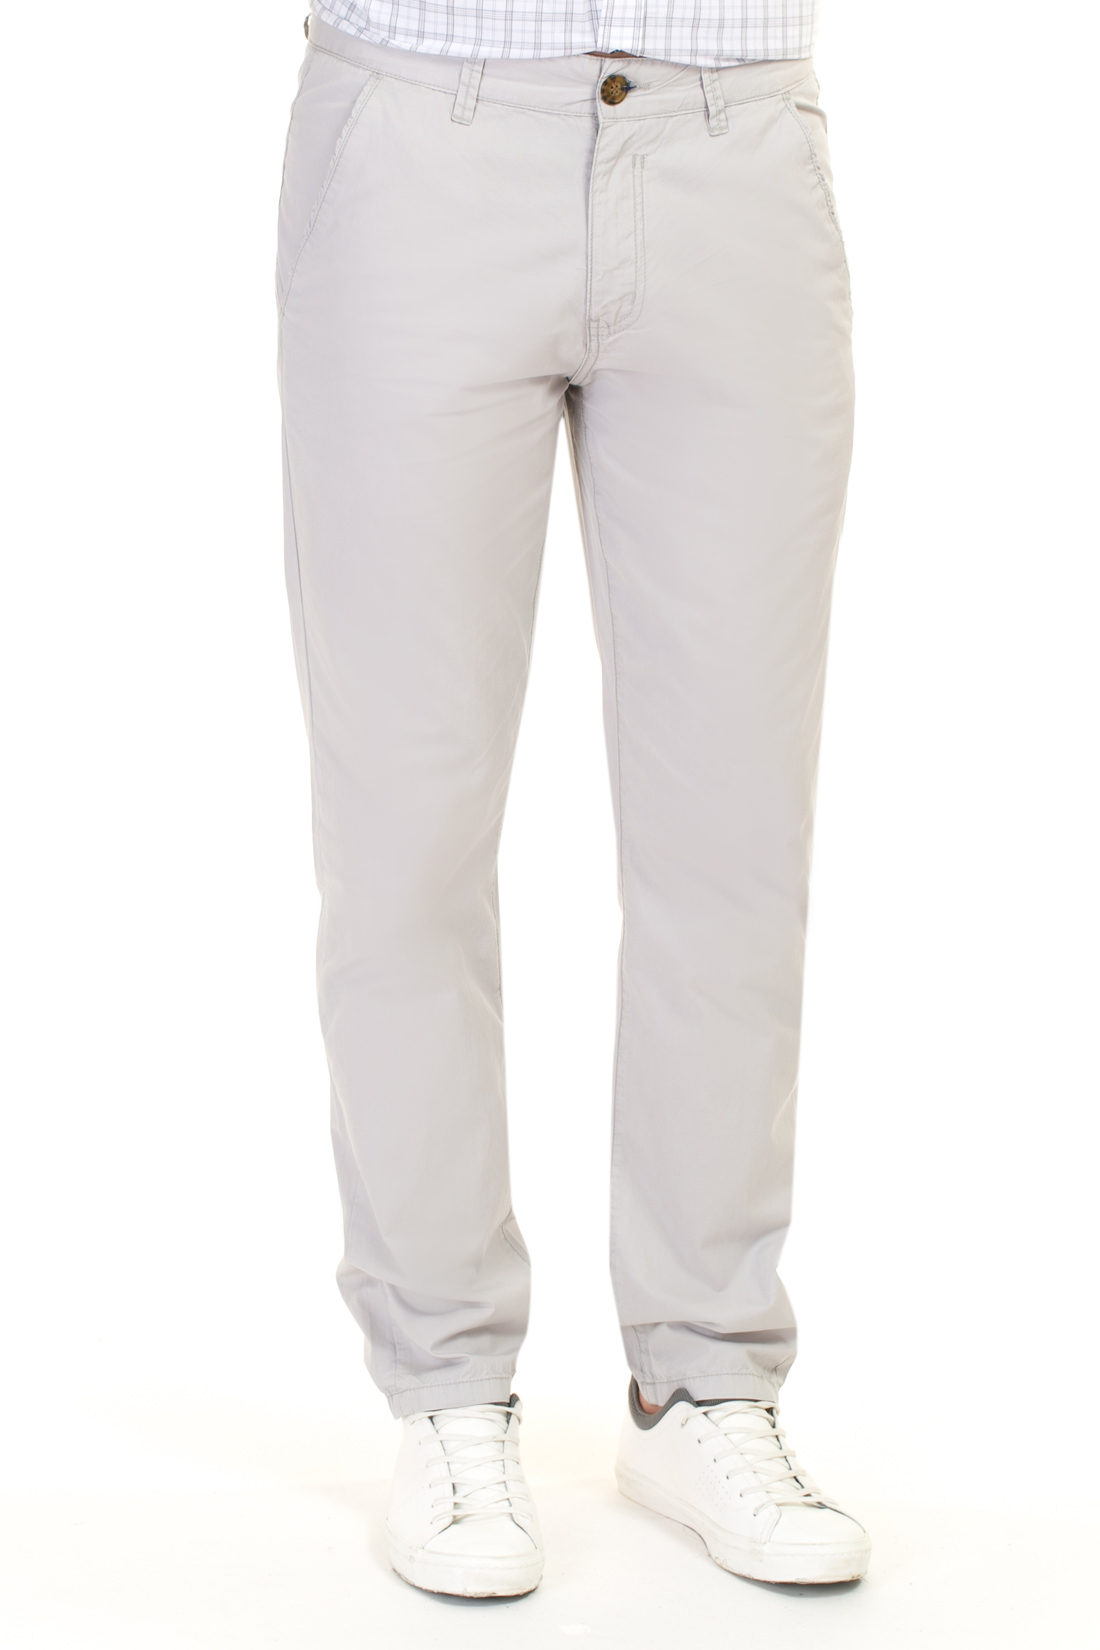 Хлопковые брюки-чиносы (арт. baon B797010), размер 3XL, цвет белый Хлопковые брюки-чиносы (арт. baon B797010) - фото 1